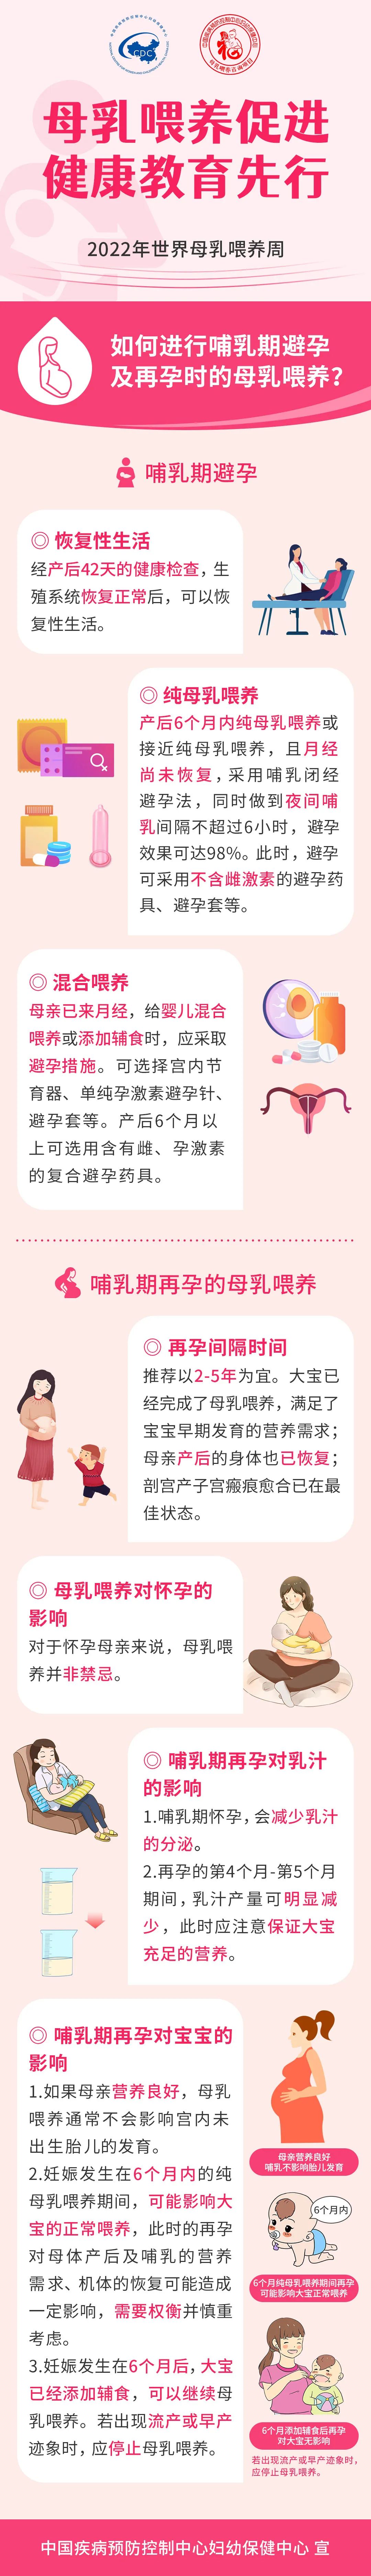 【母乳喂养周】如何进行哺乳期避孕及再孕时的母乳喂养？.jpg